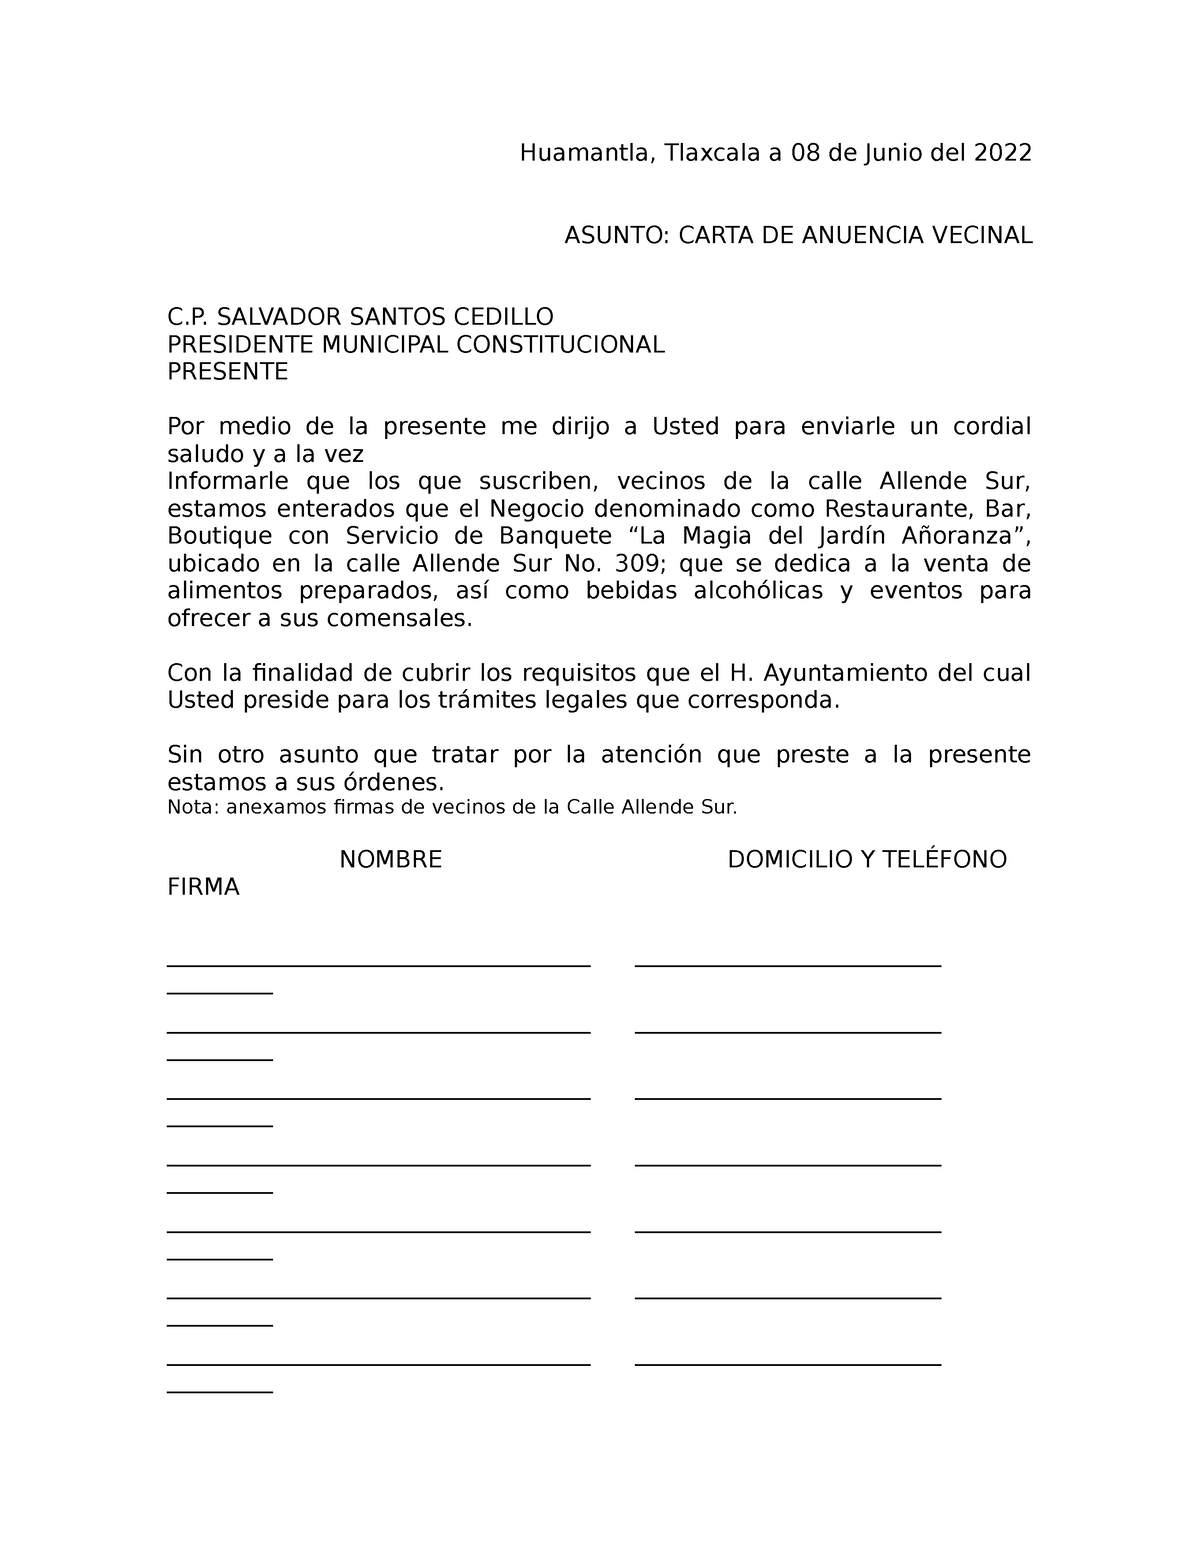 Anuencia Vecinal Huamantla Tlaxcala A 08 De Junio Del 2022 Asunto Carta De Anuencia Vecinal 7782